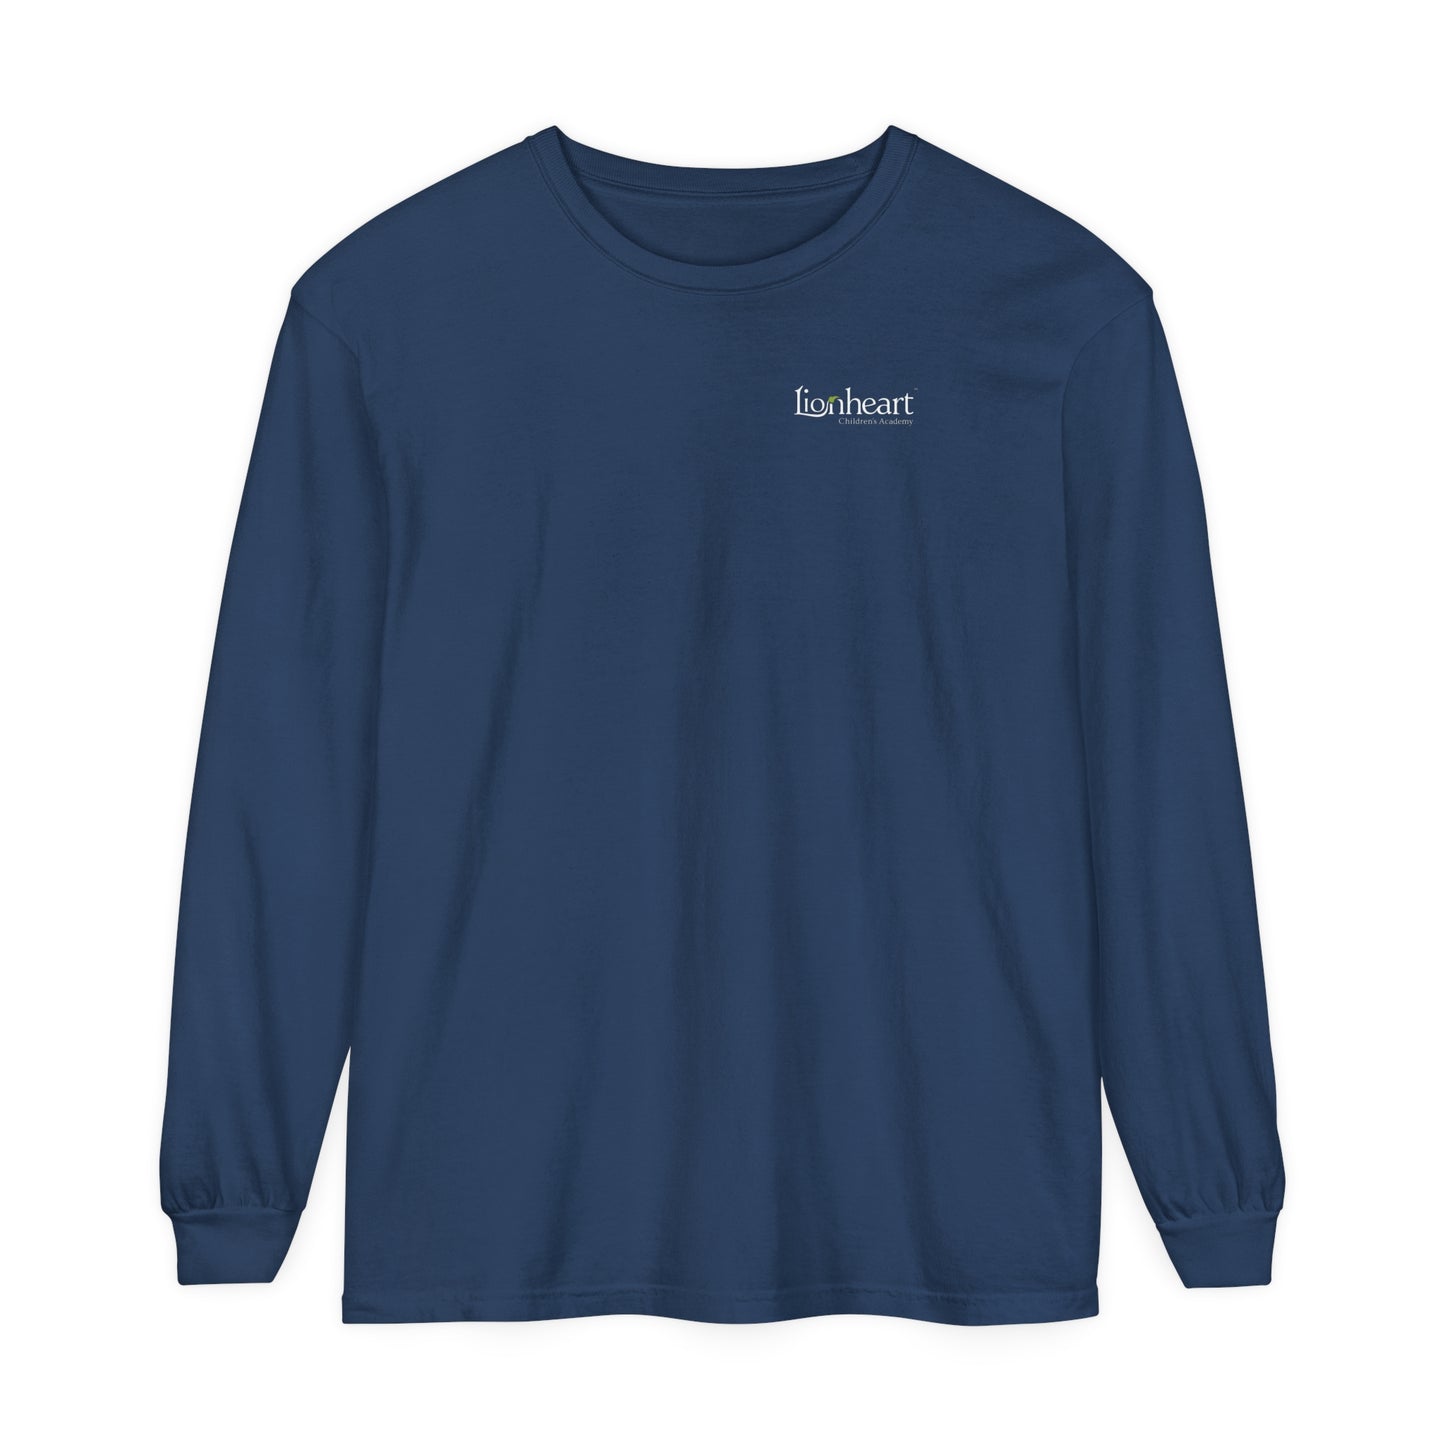 Lionheart Unisex Long Sleeve T-Shirt